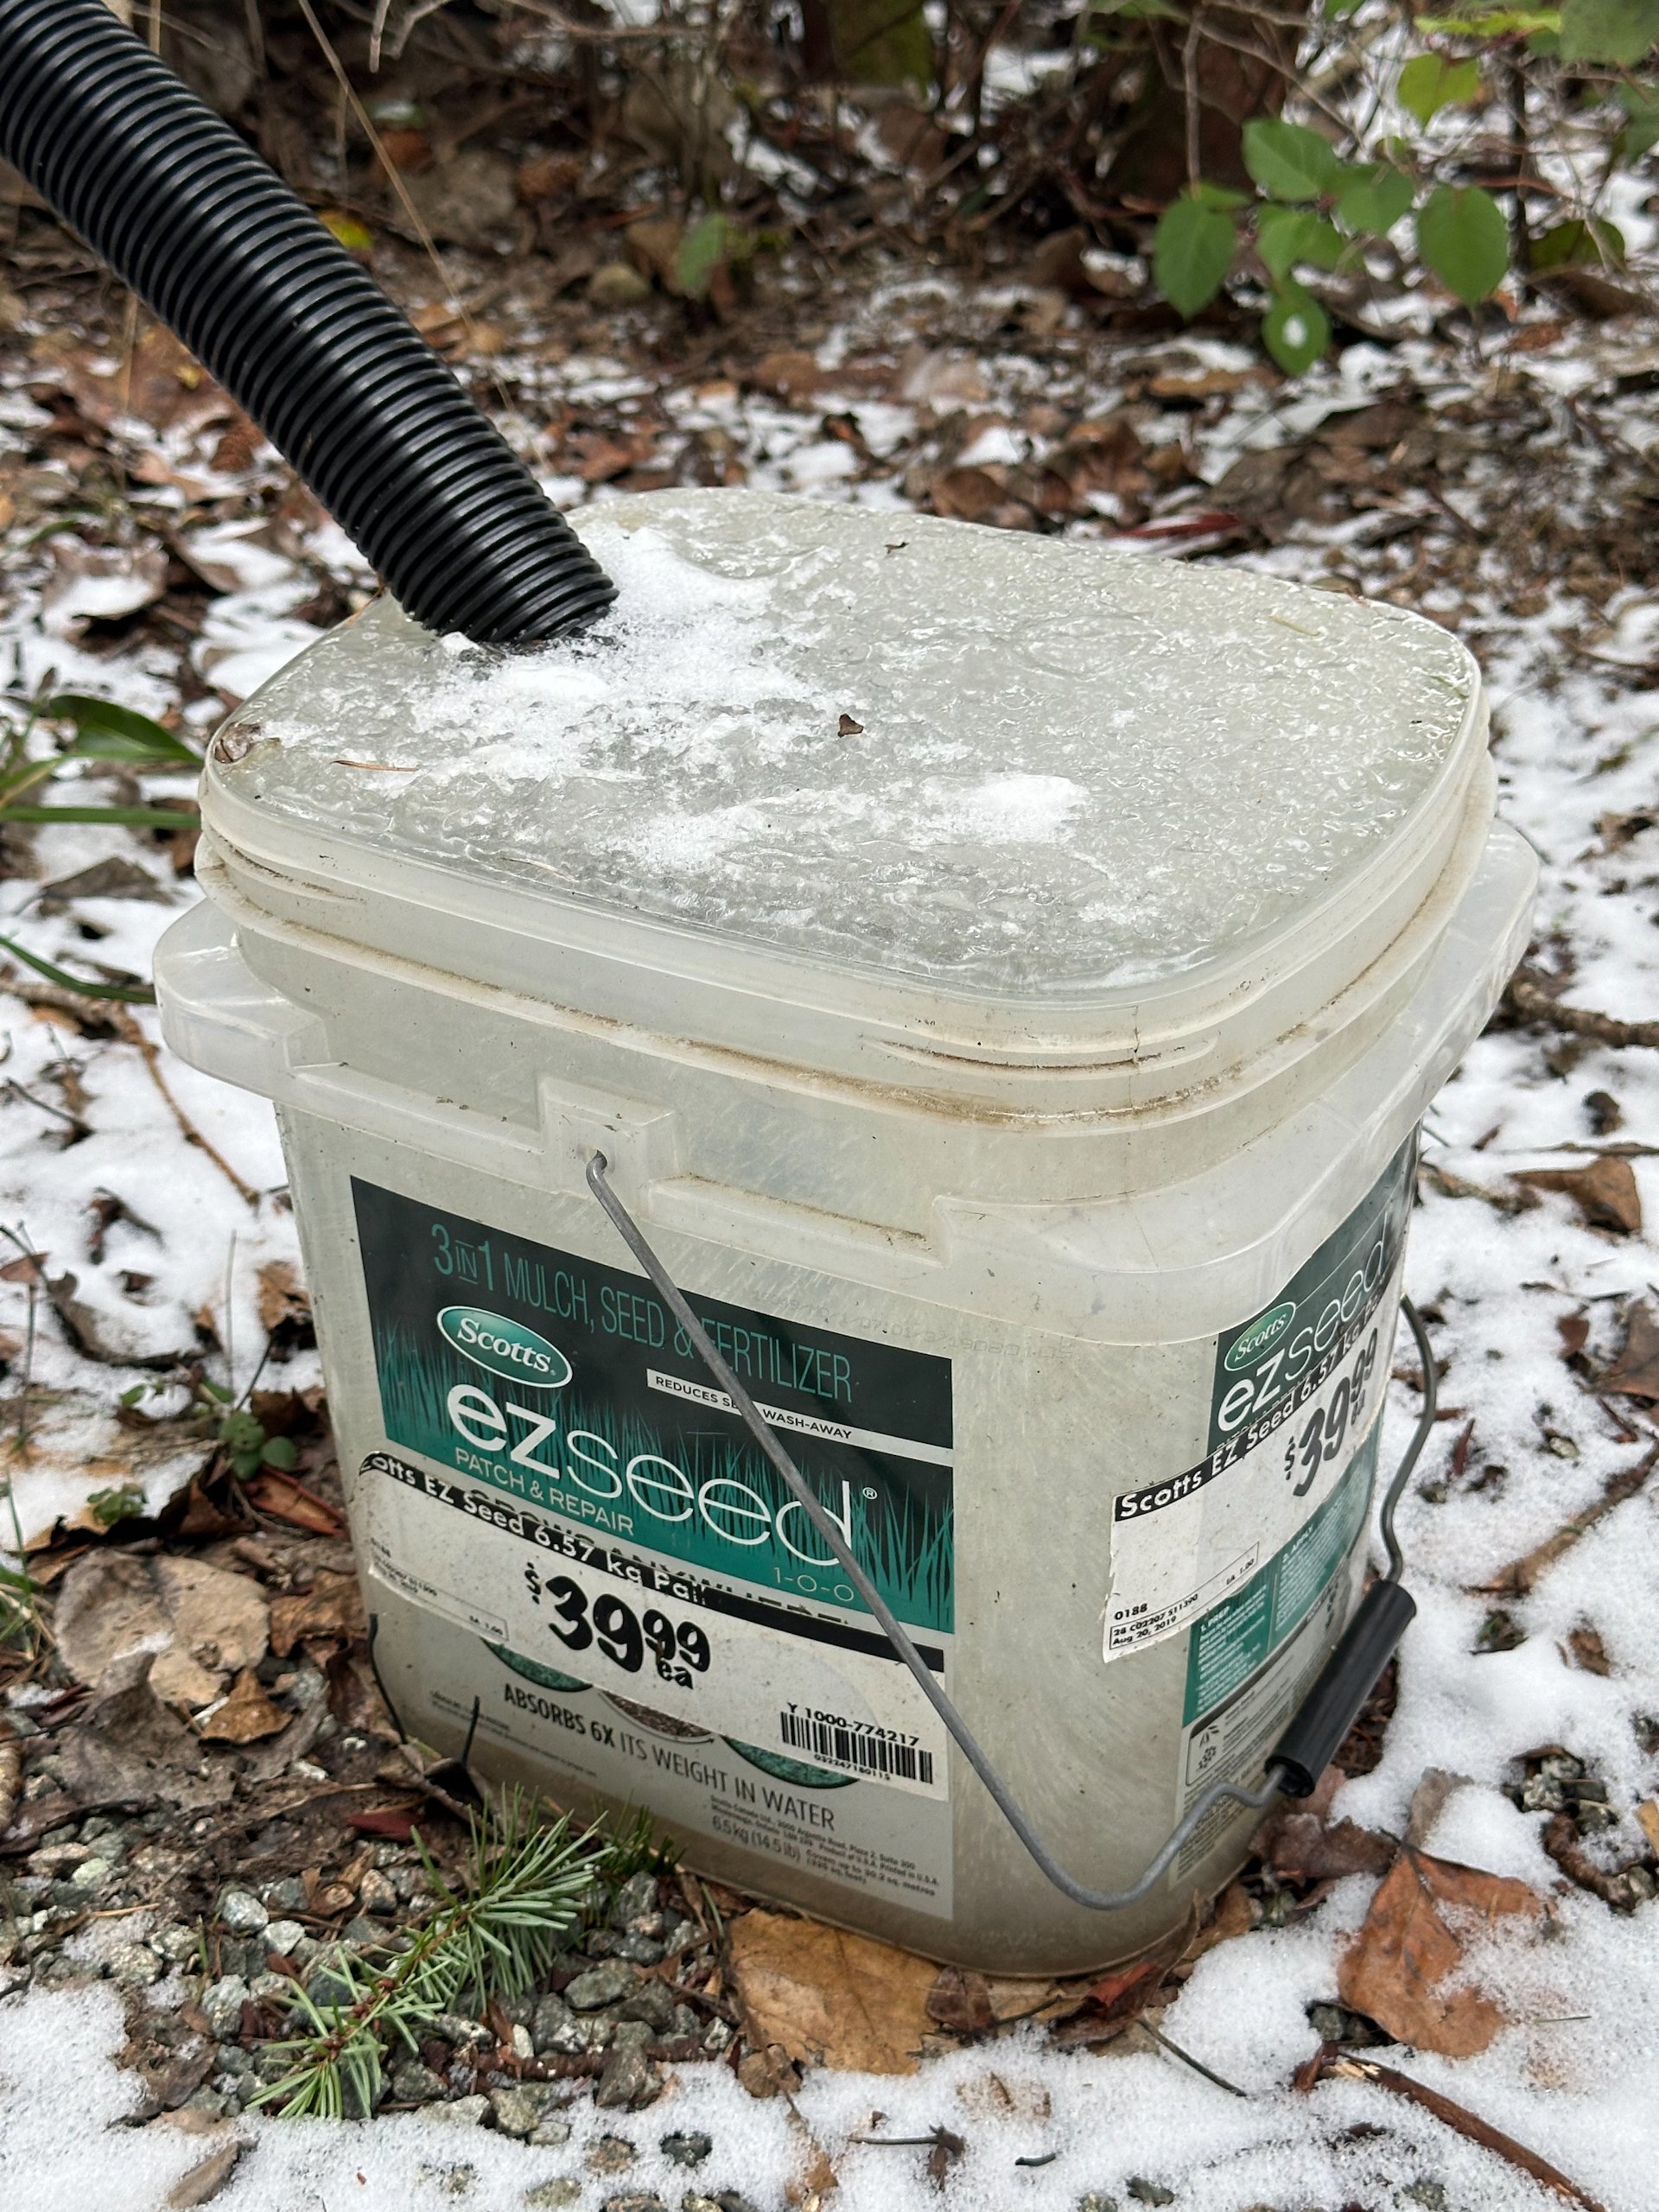  The overflow bucket frozen solid. 